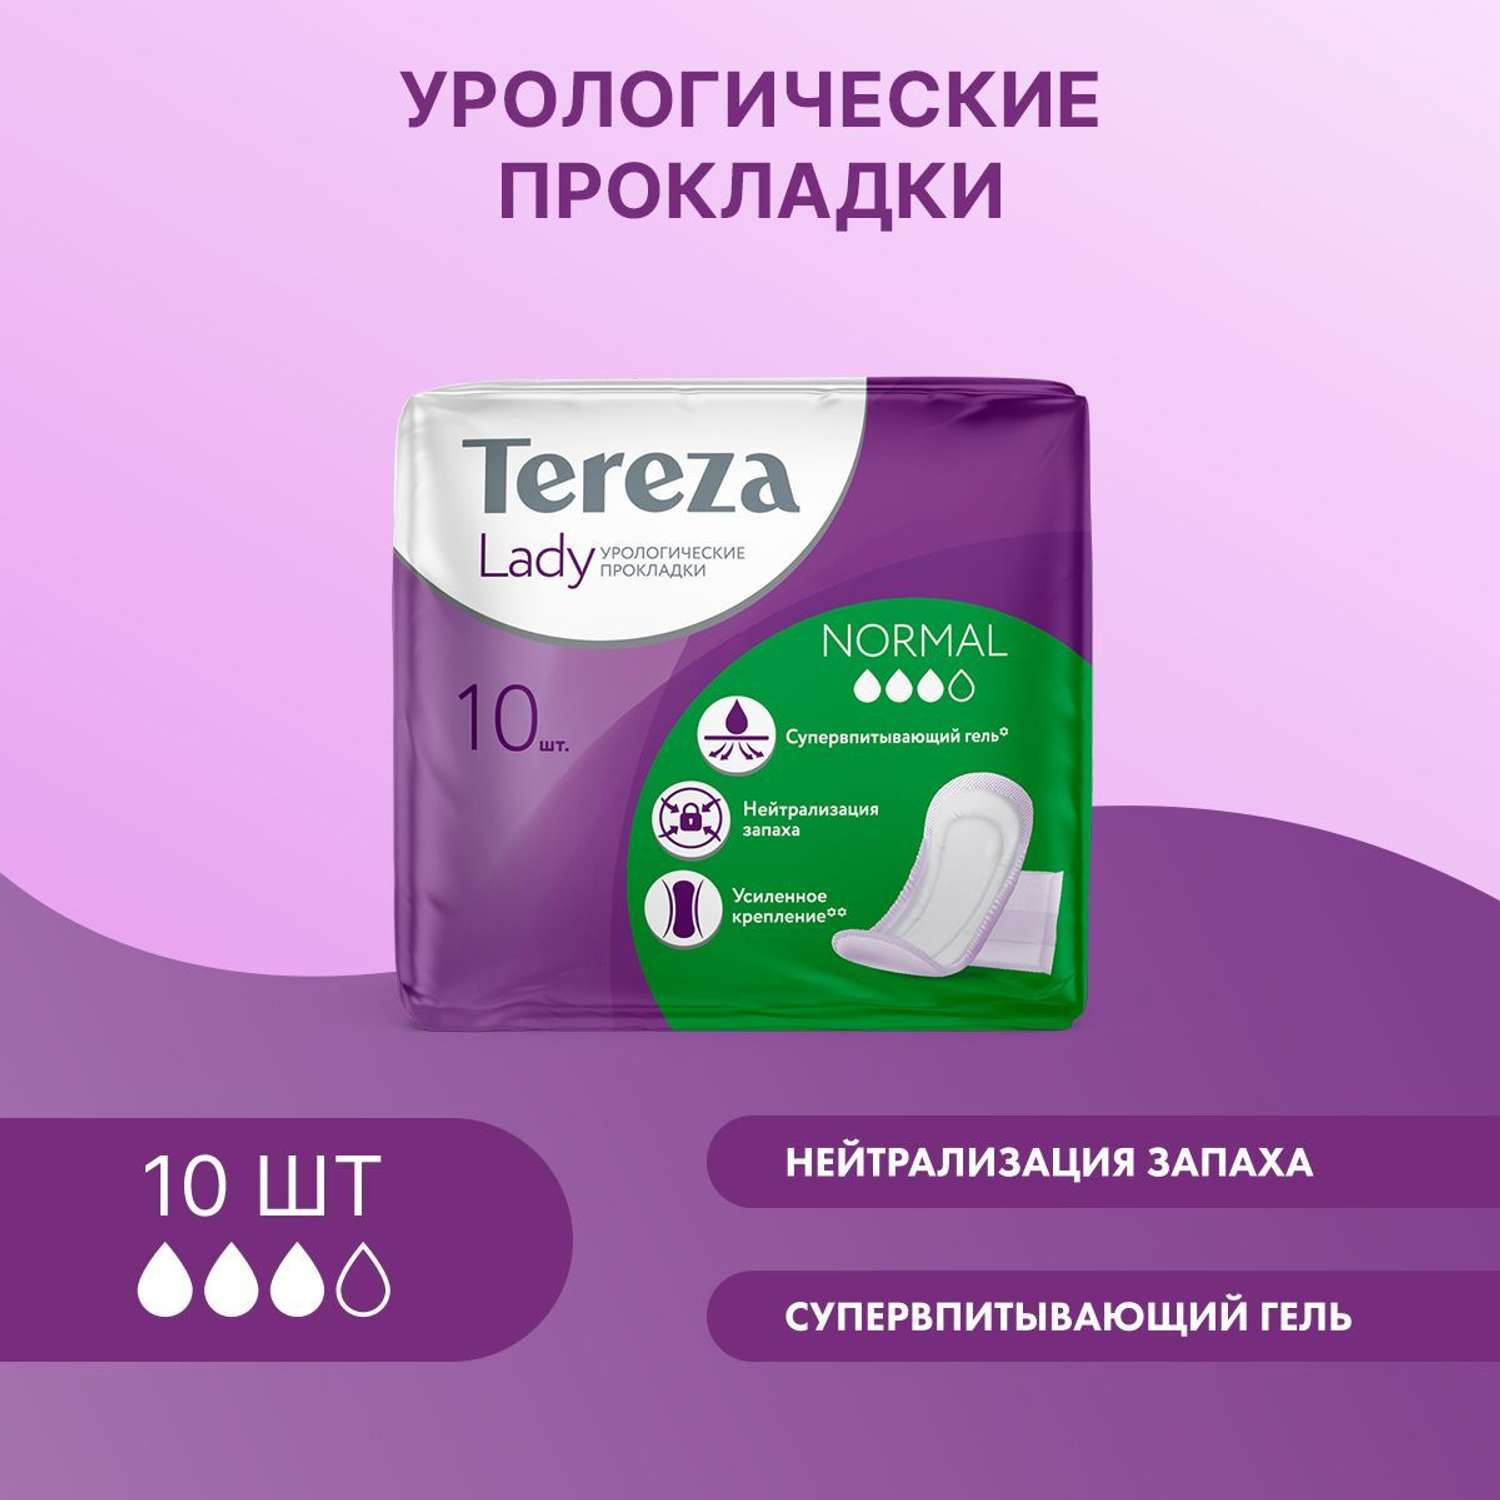 Урологические прокладки TerezaLady для женщин Normal при недержании супервпитывающие нейтрализующие запах трехслойные 10 шт - фото 1